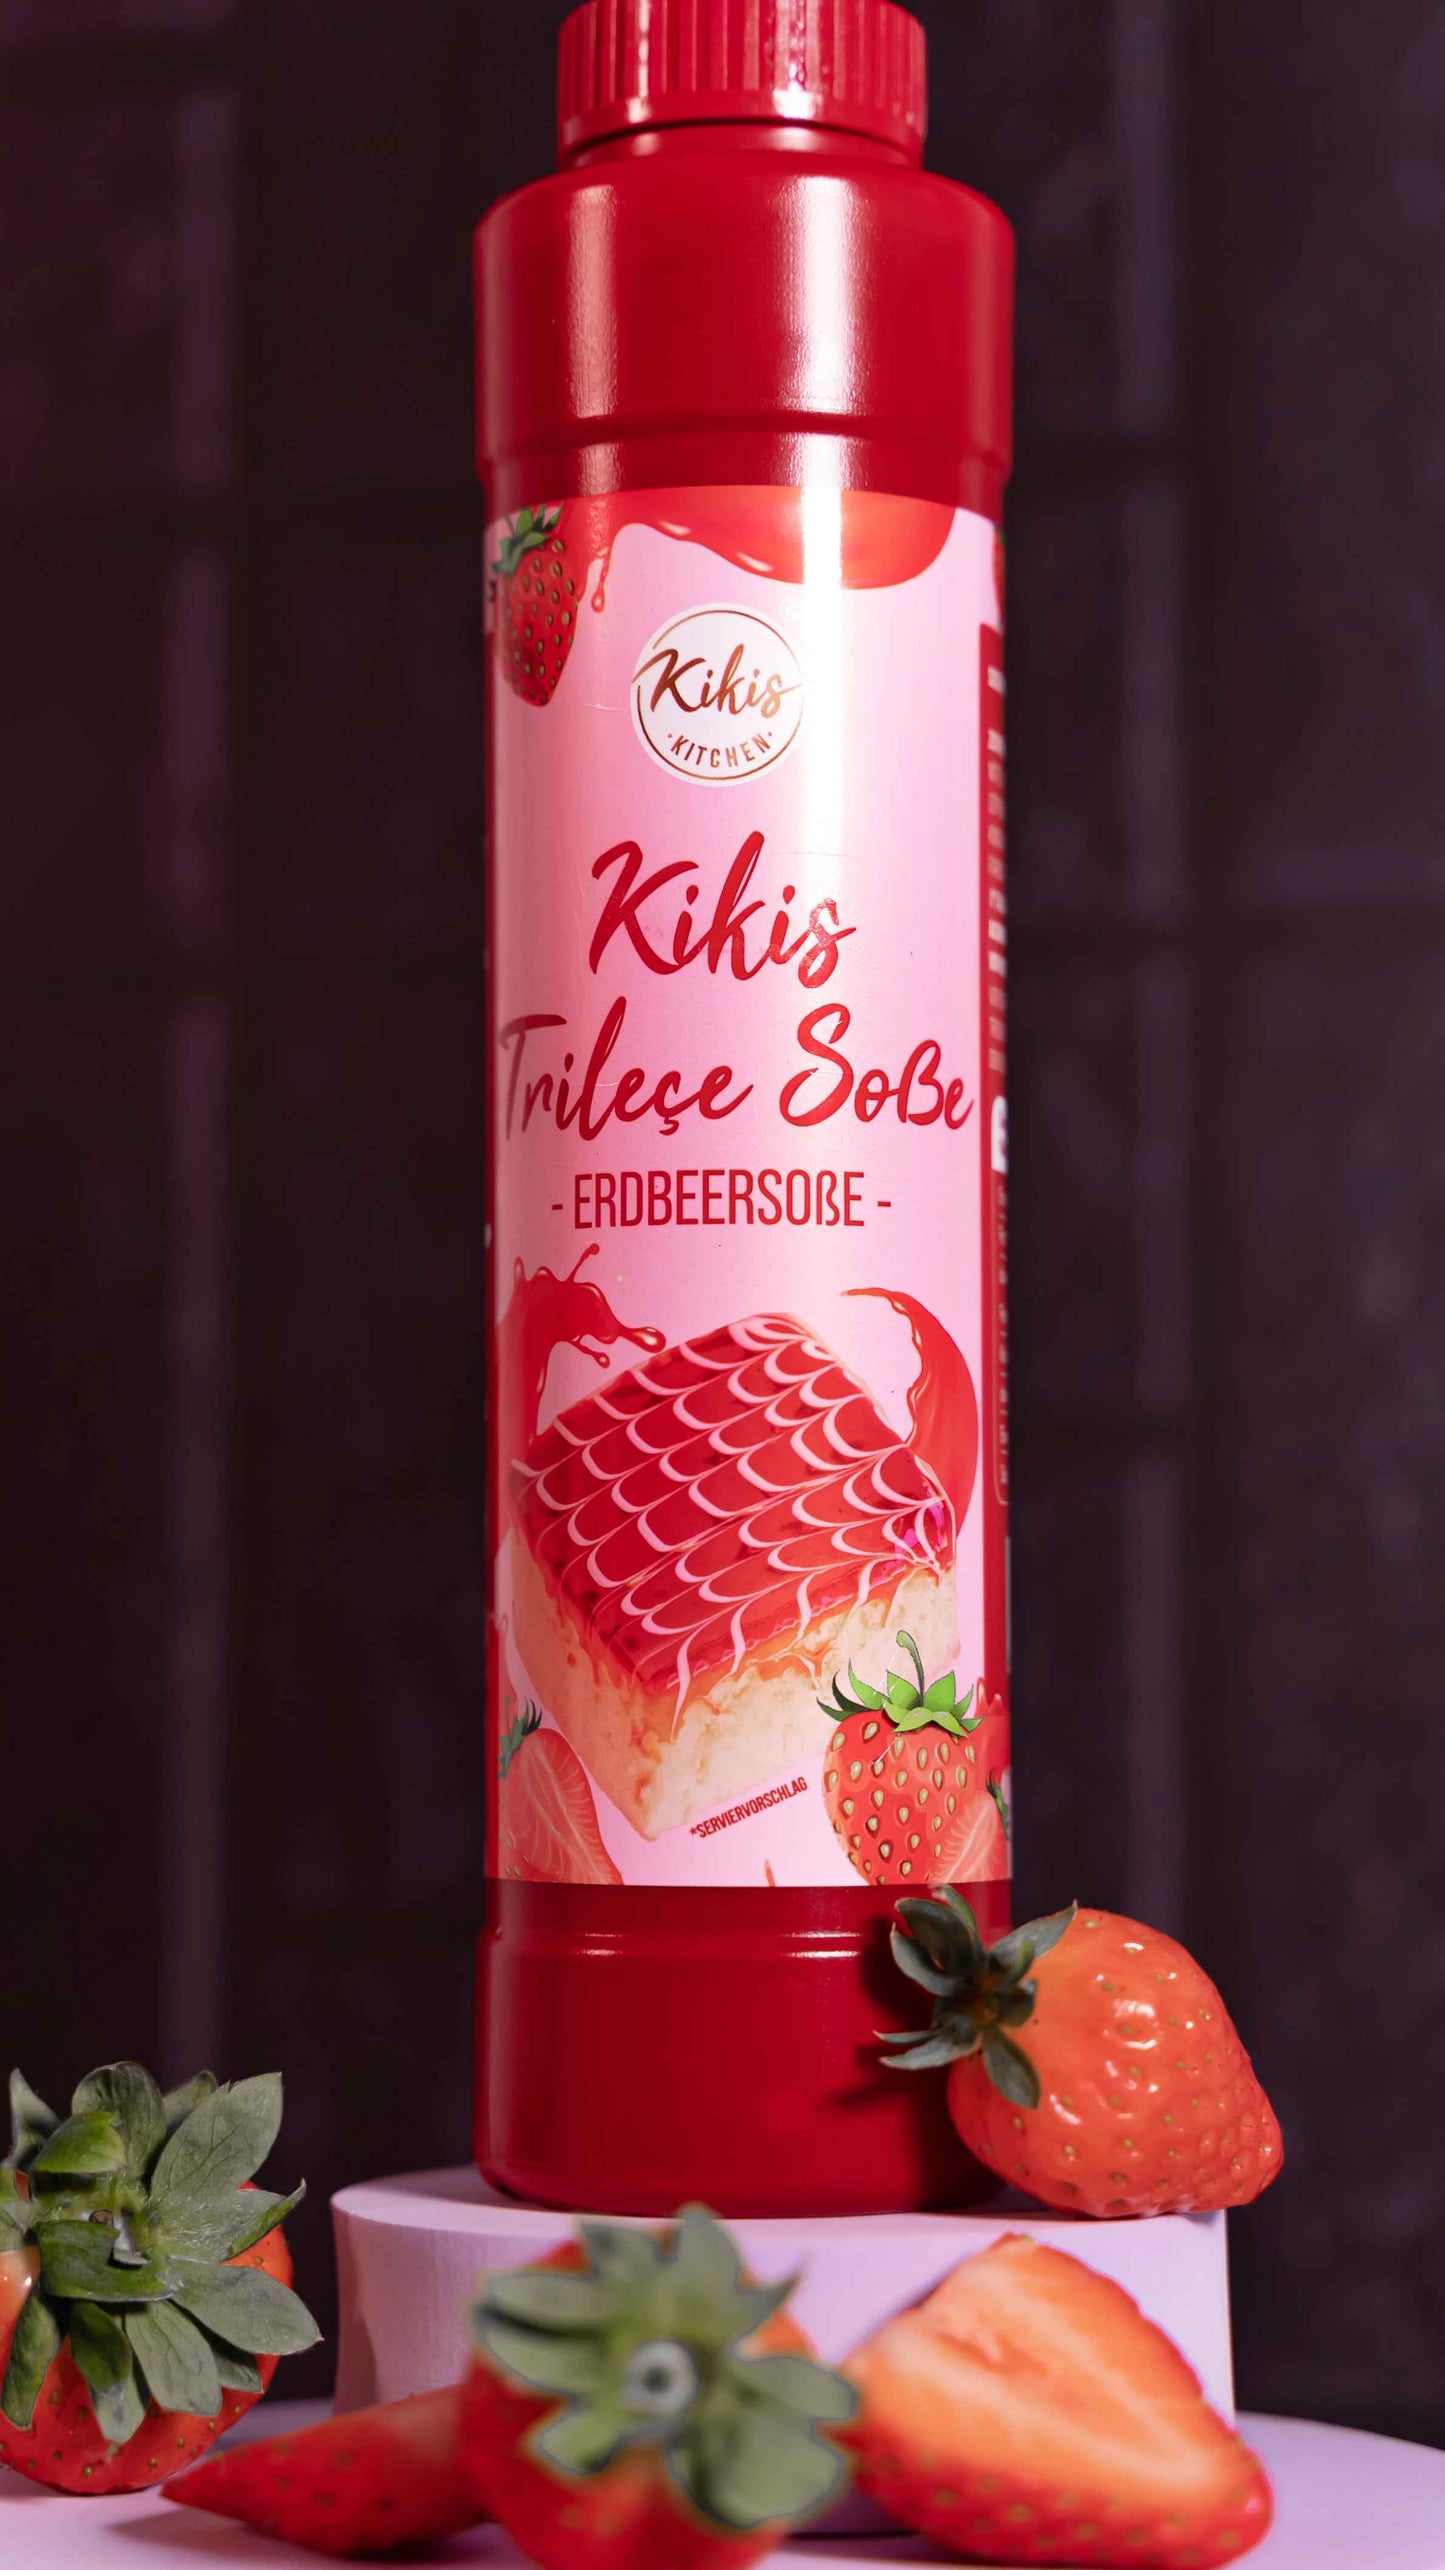 Kikis Trilece Soße - Erdbeersoße